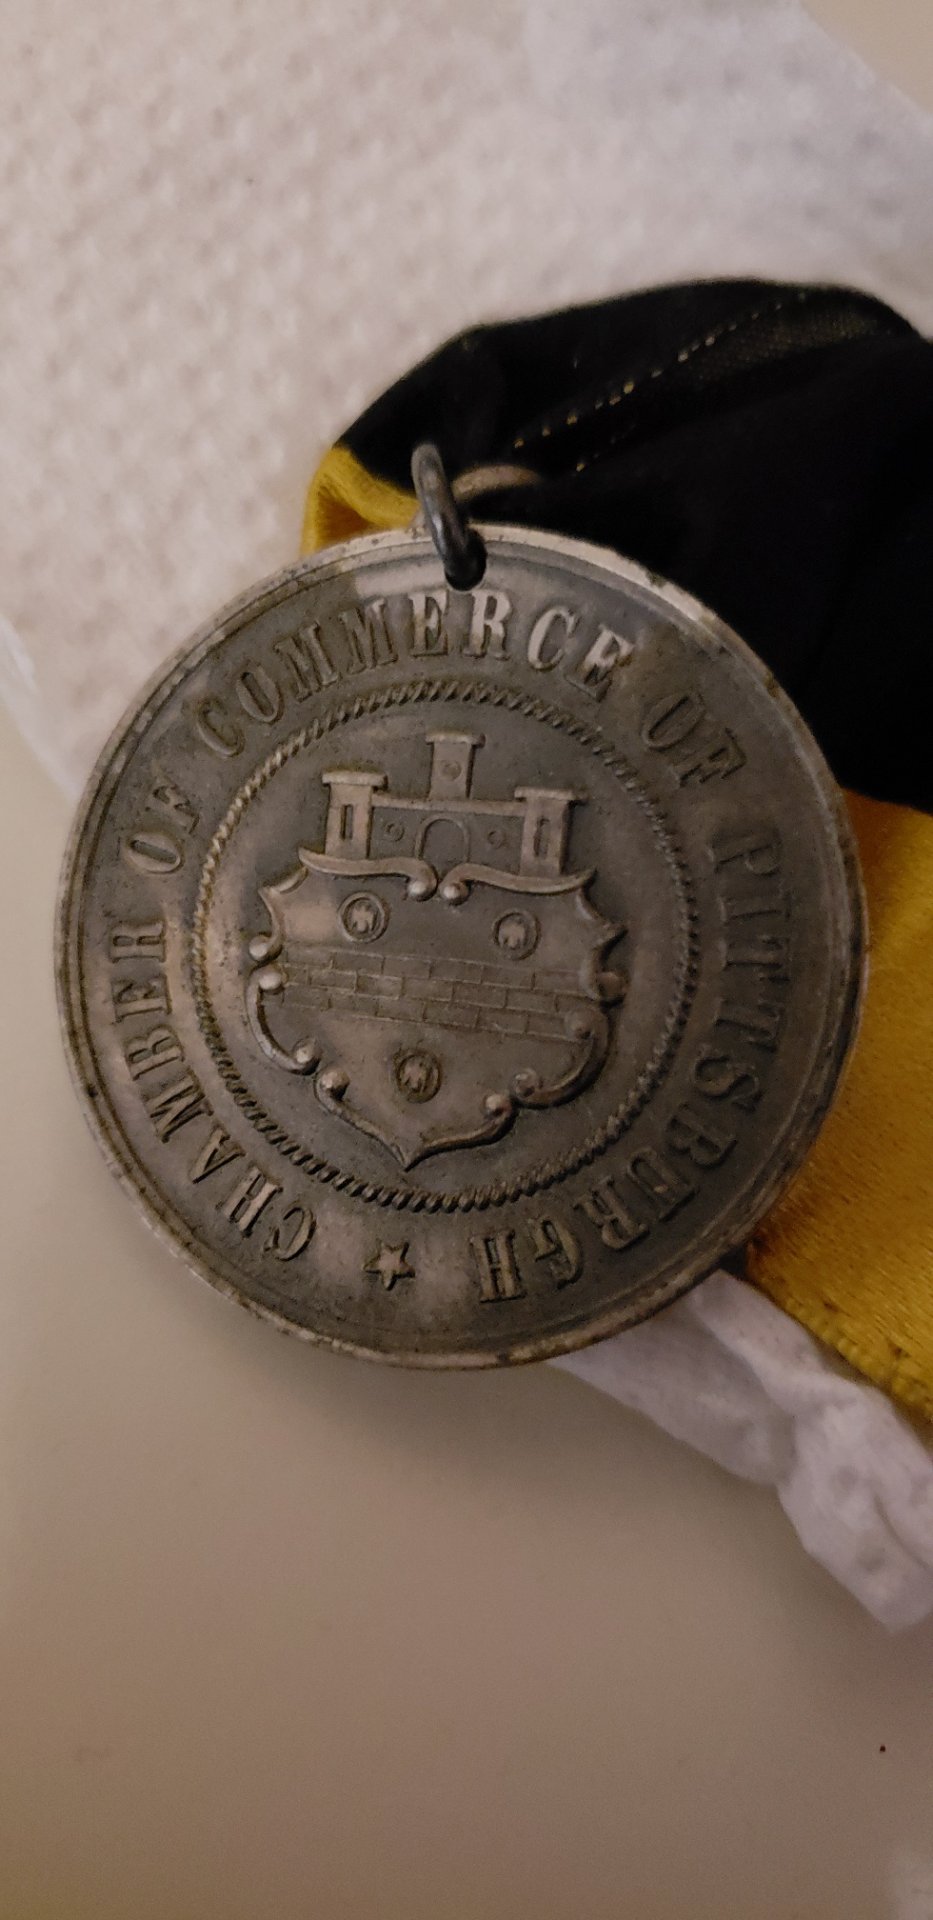 Reverse of sterling medallion